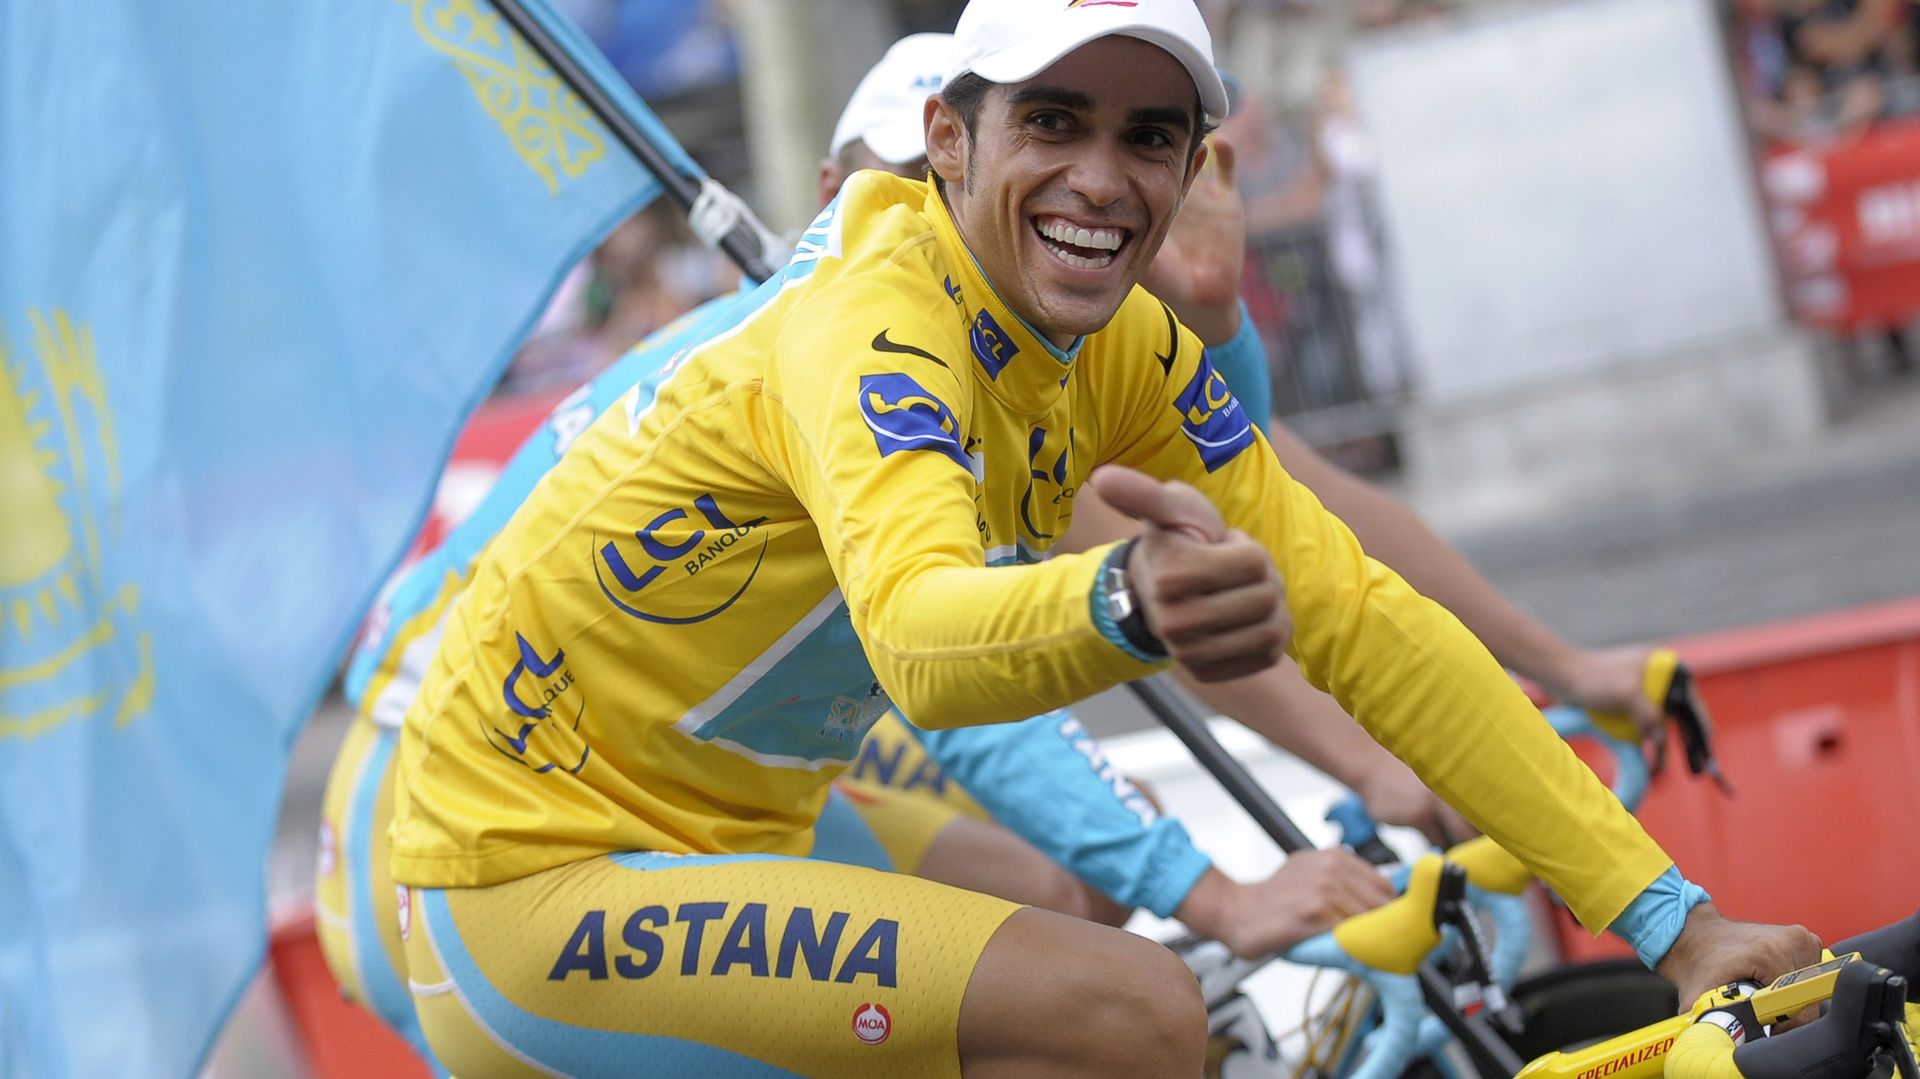 Alberto Contador, vainqueur sortant de la Grande Boucle